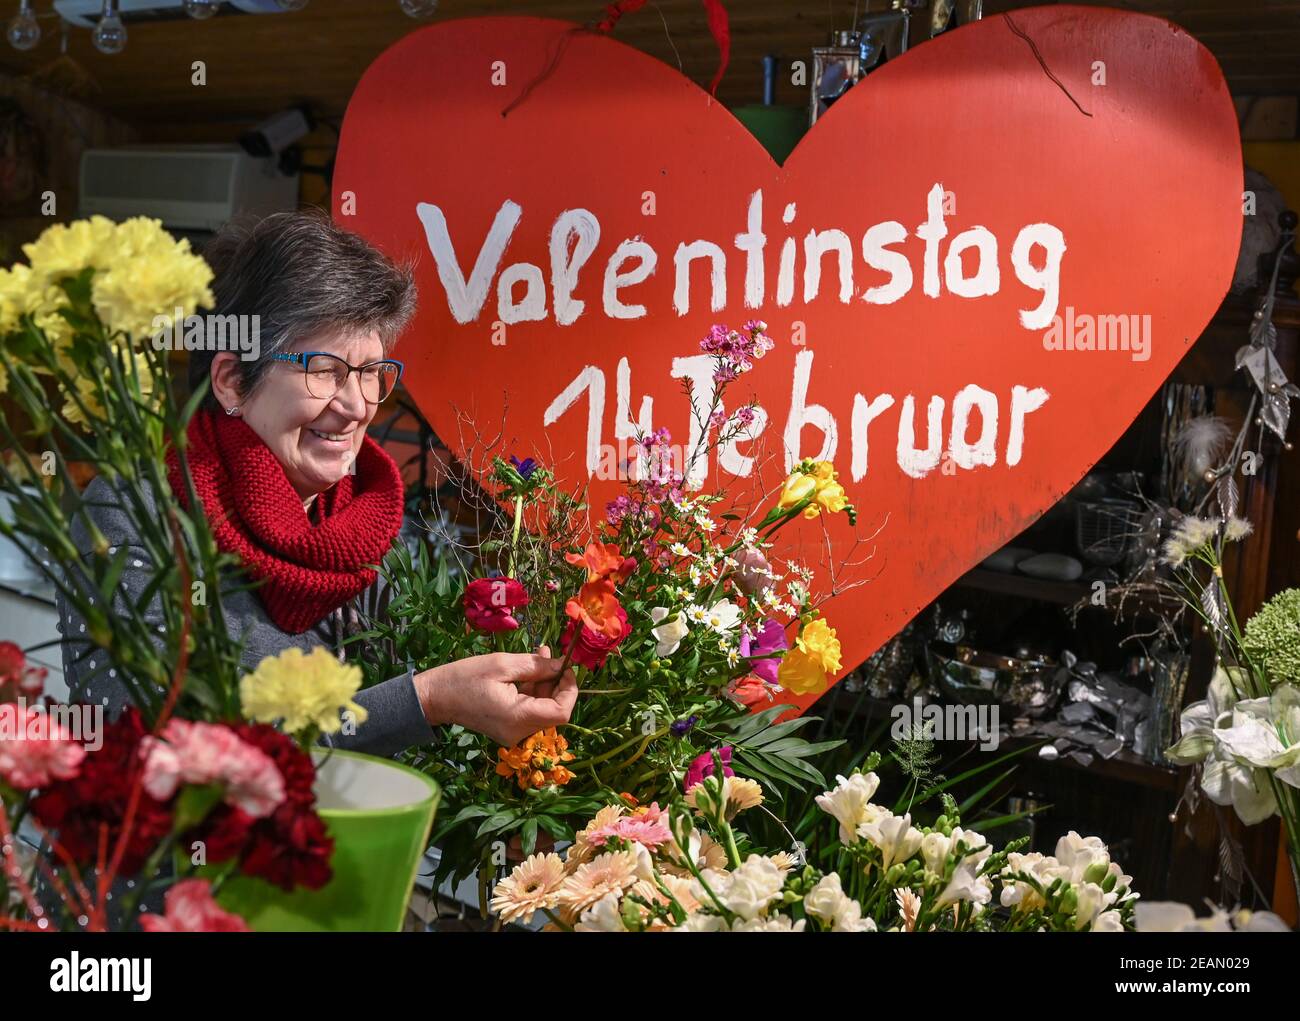 Vevais, Alemania. 10 de febrero de 2021. Carla Hofmann, florista y  propietaria de la floristería, está al lado de un gran corazón con las  palabras "San Valentín 14 de febrero" y ata